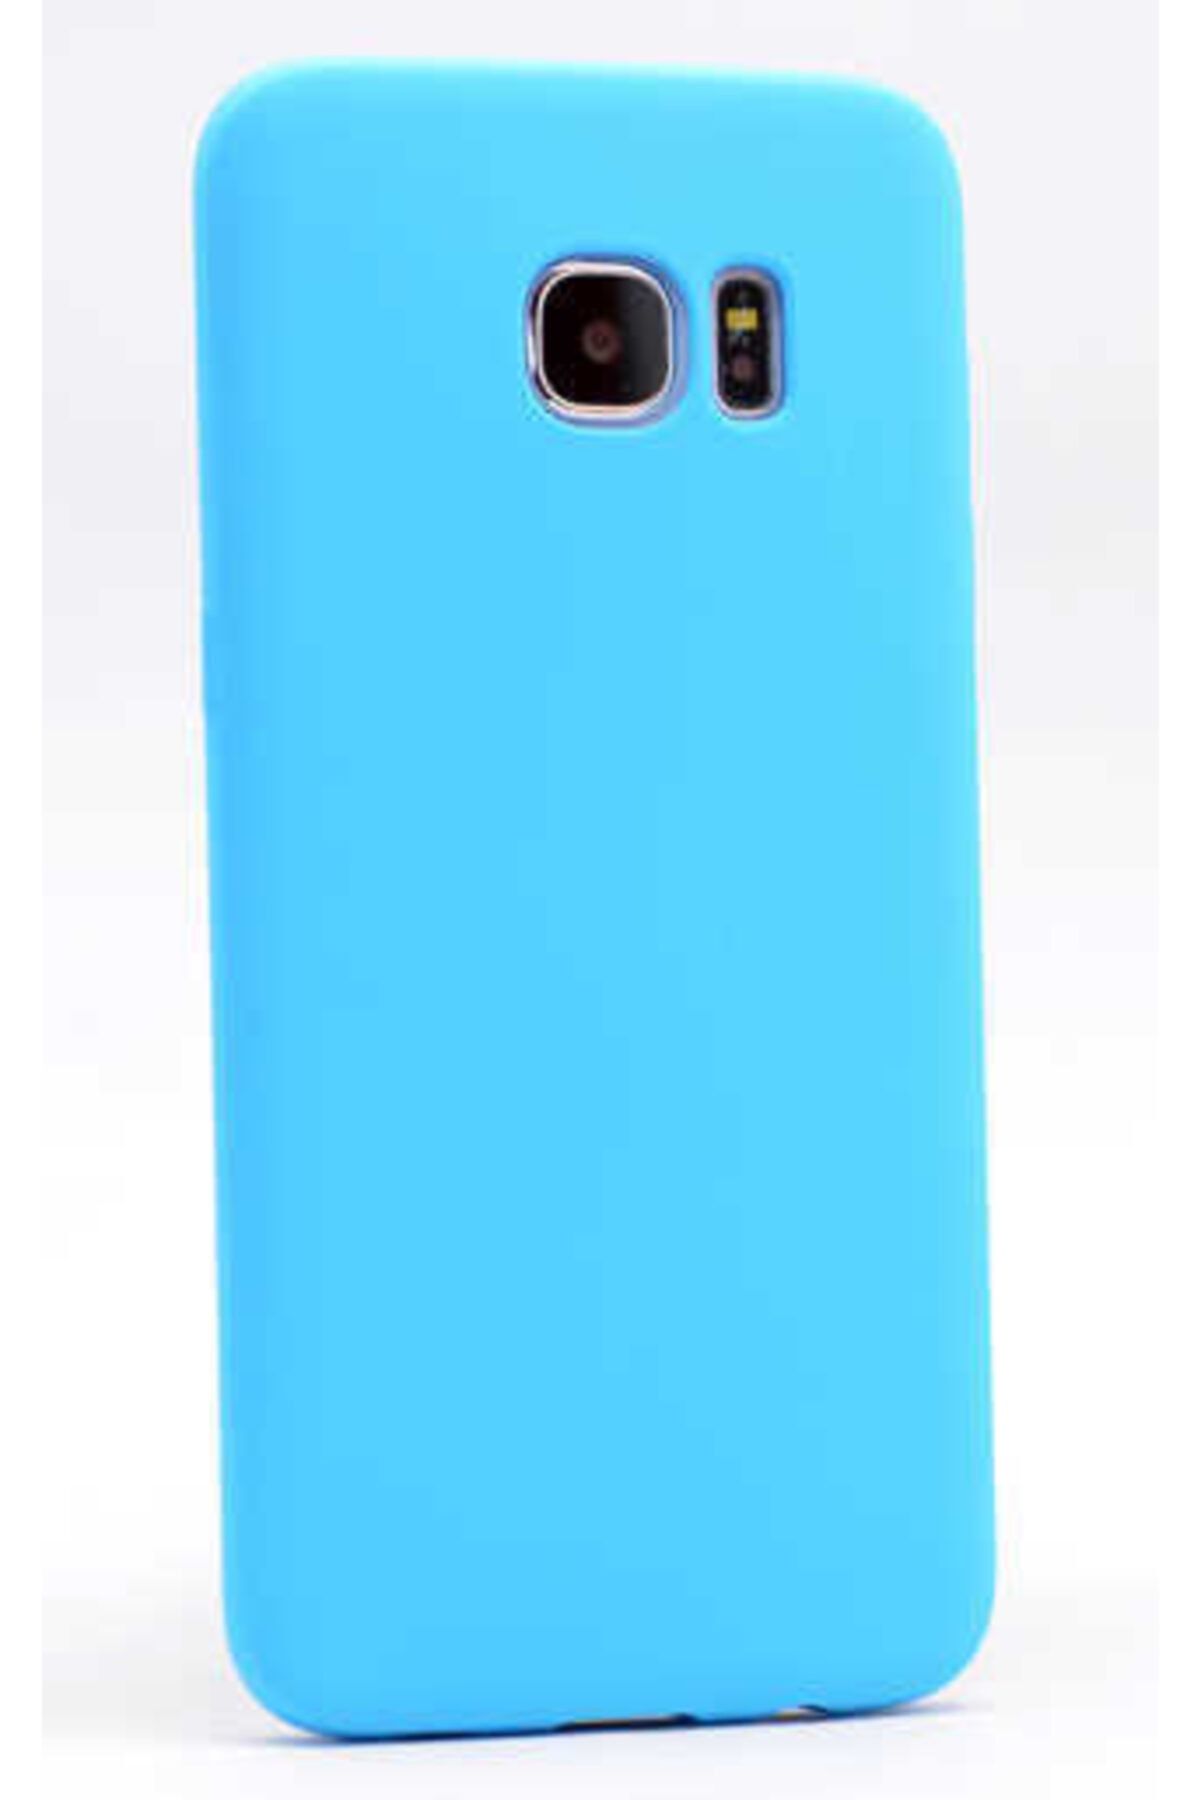 İncisoft Galaxy S7 Edge Uyumlu Ince Yumuşak Soft Tasarım Renkli Silikon Kılıf